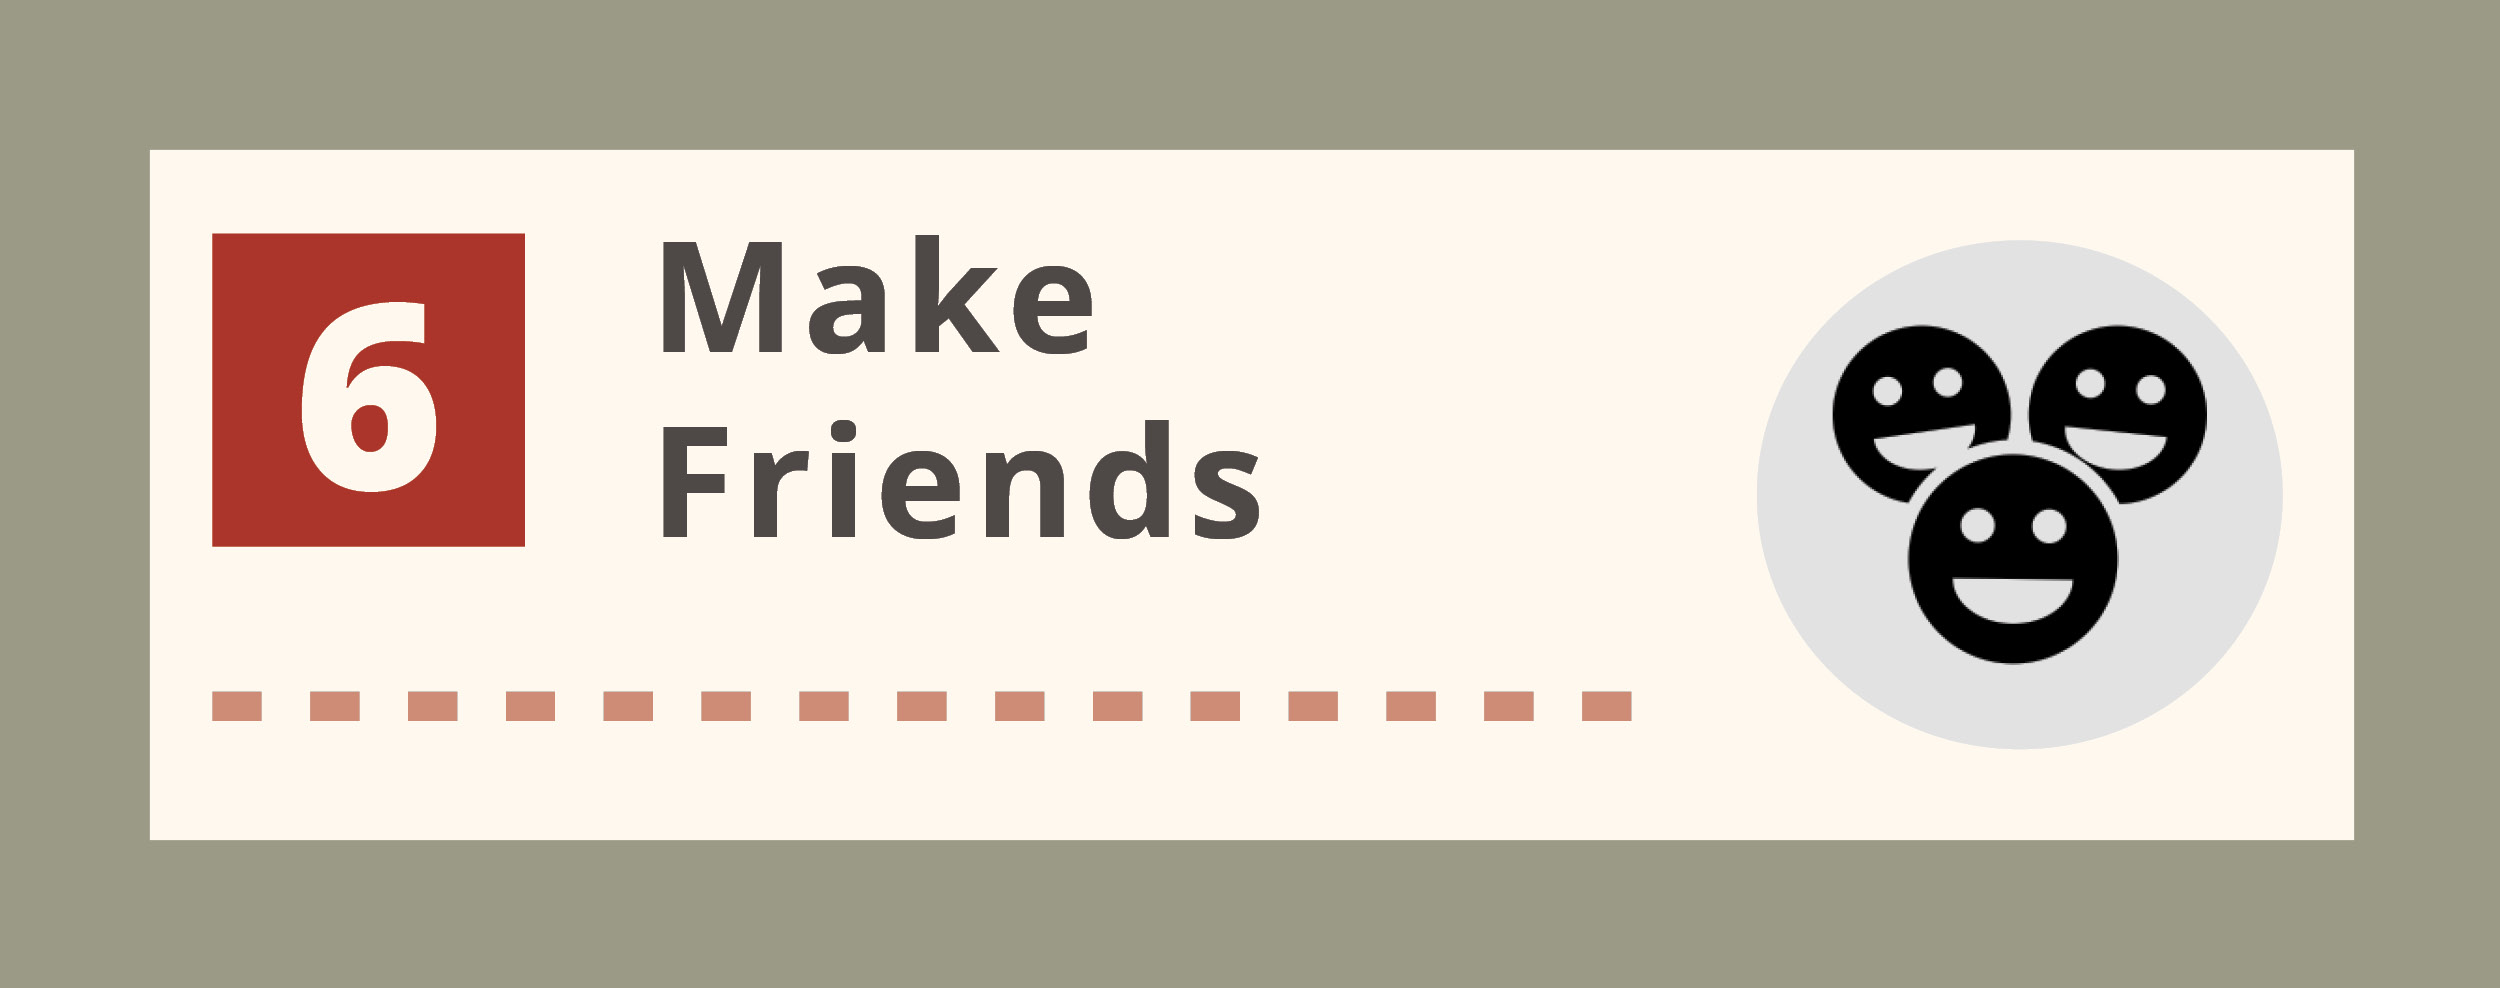 Make friends text